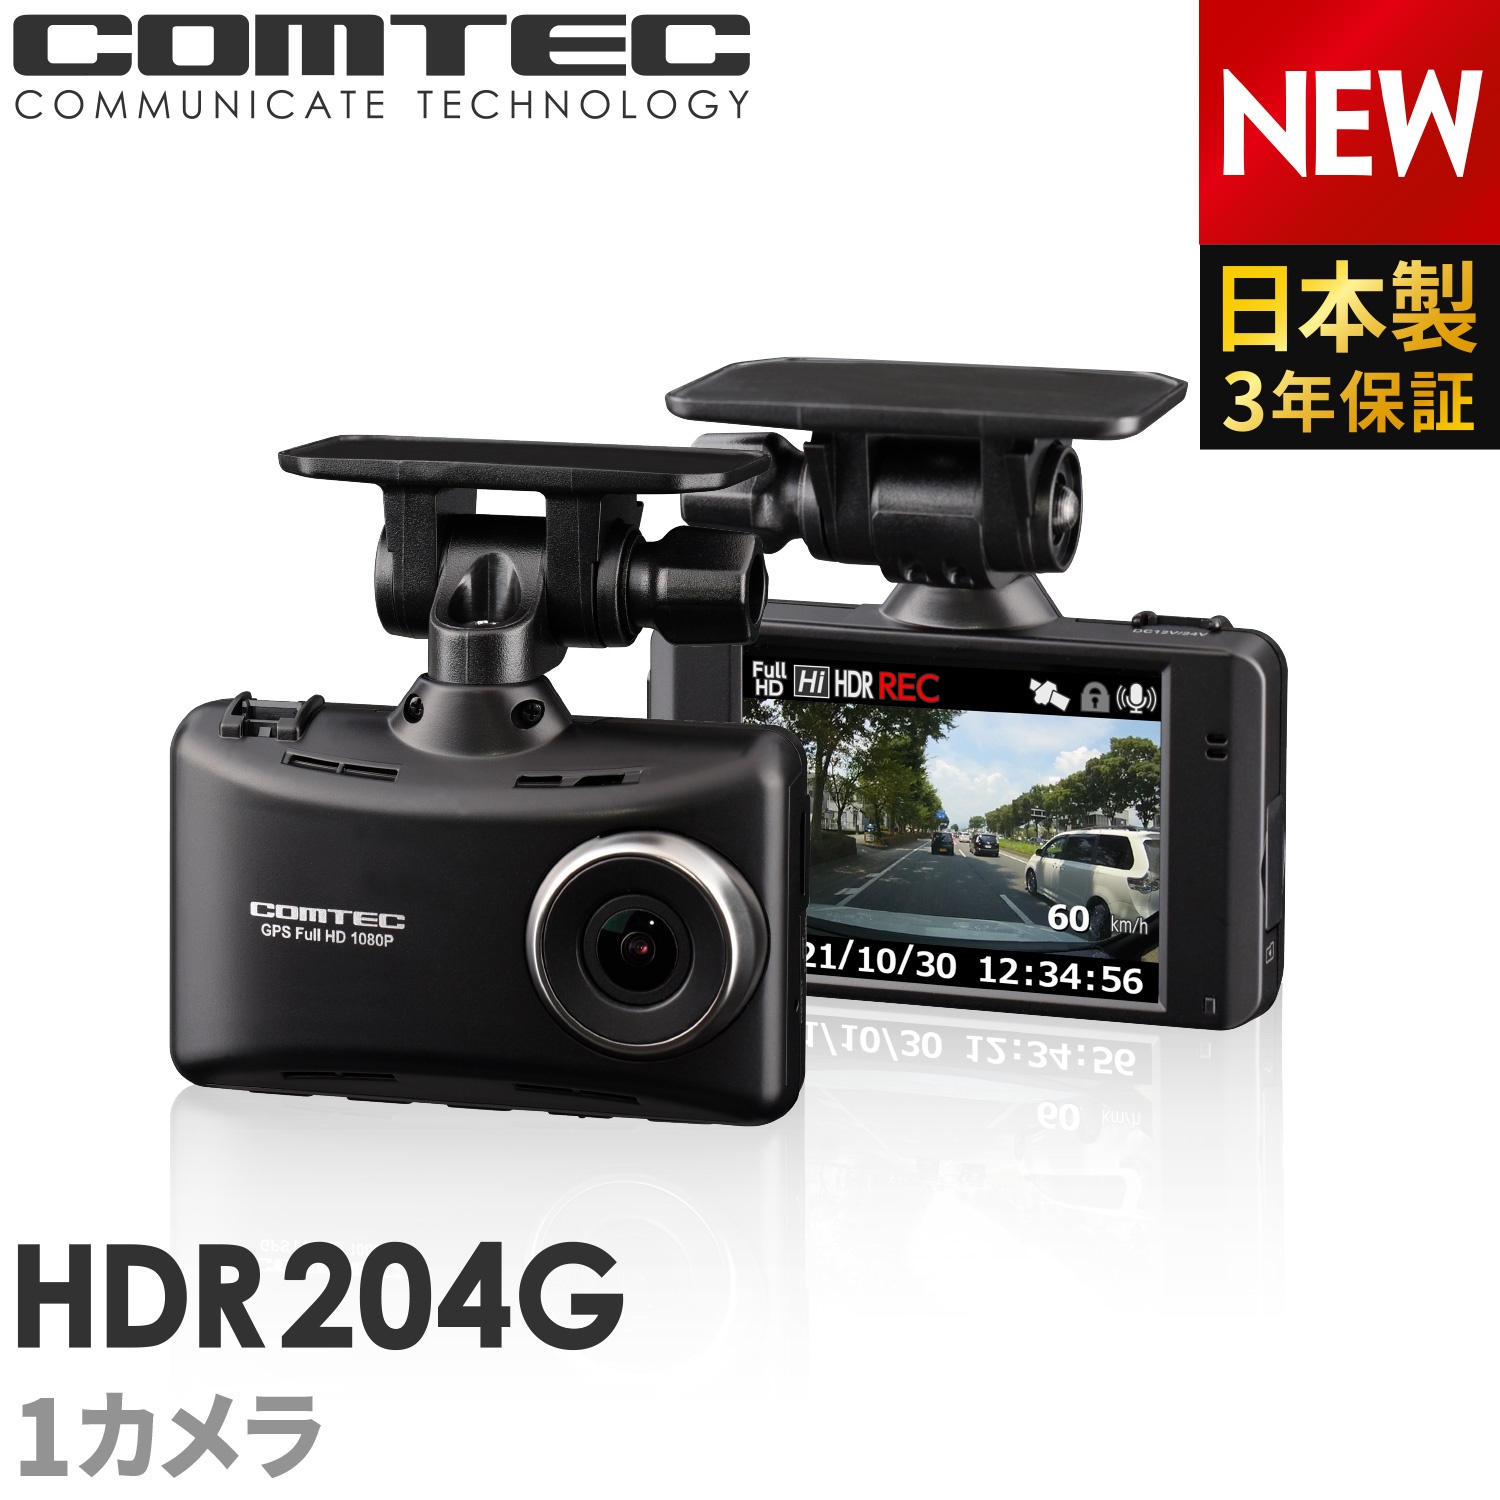 楽天市場】ドライブレコーダー 前後2カメラ コムテック ZDR035 日本製 